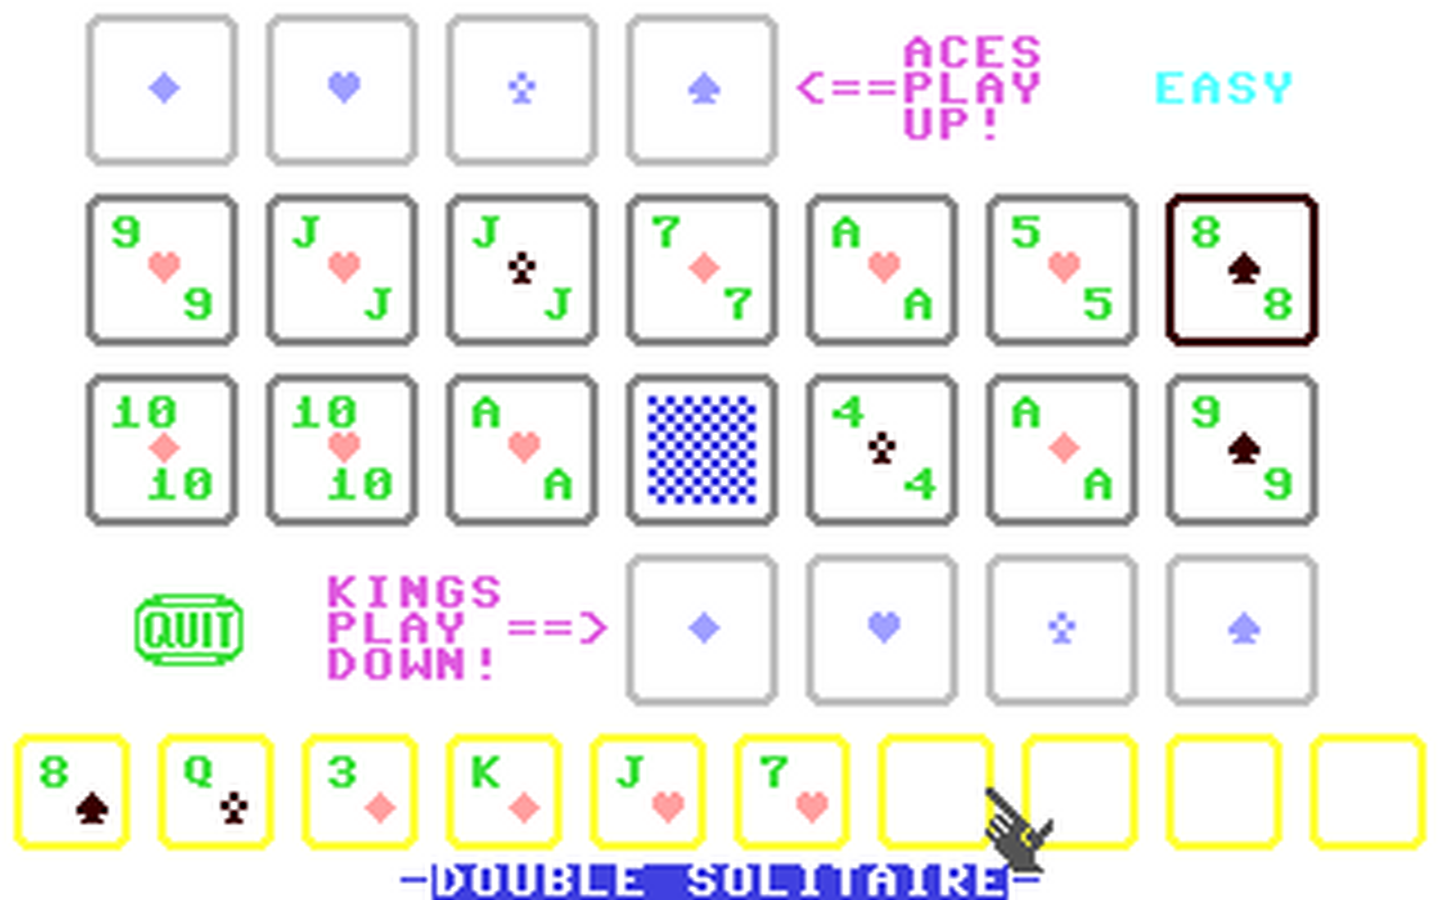 C64 GameBase Double_Solitaire (Public_Domain) 1992